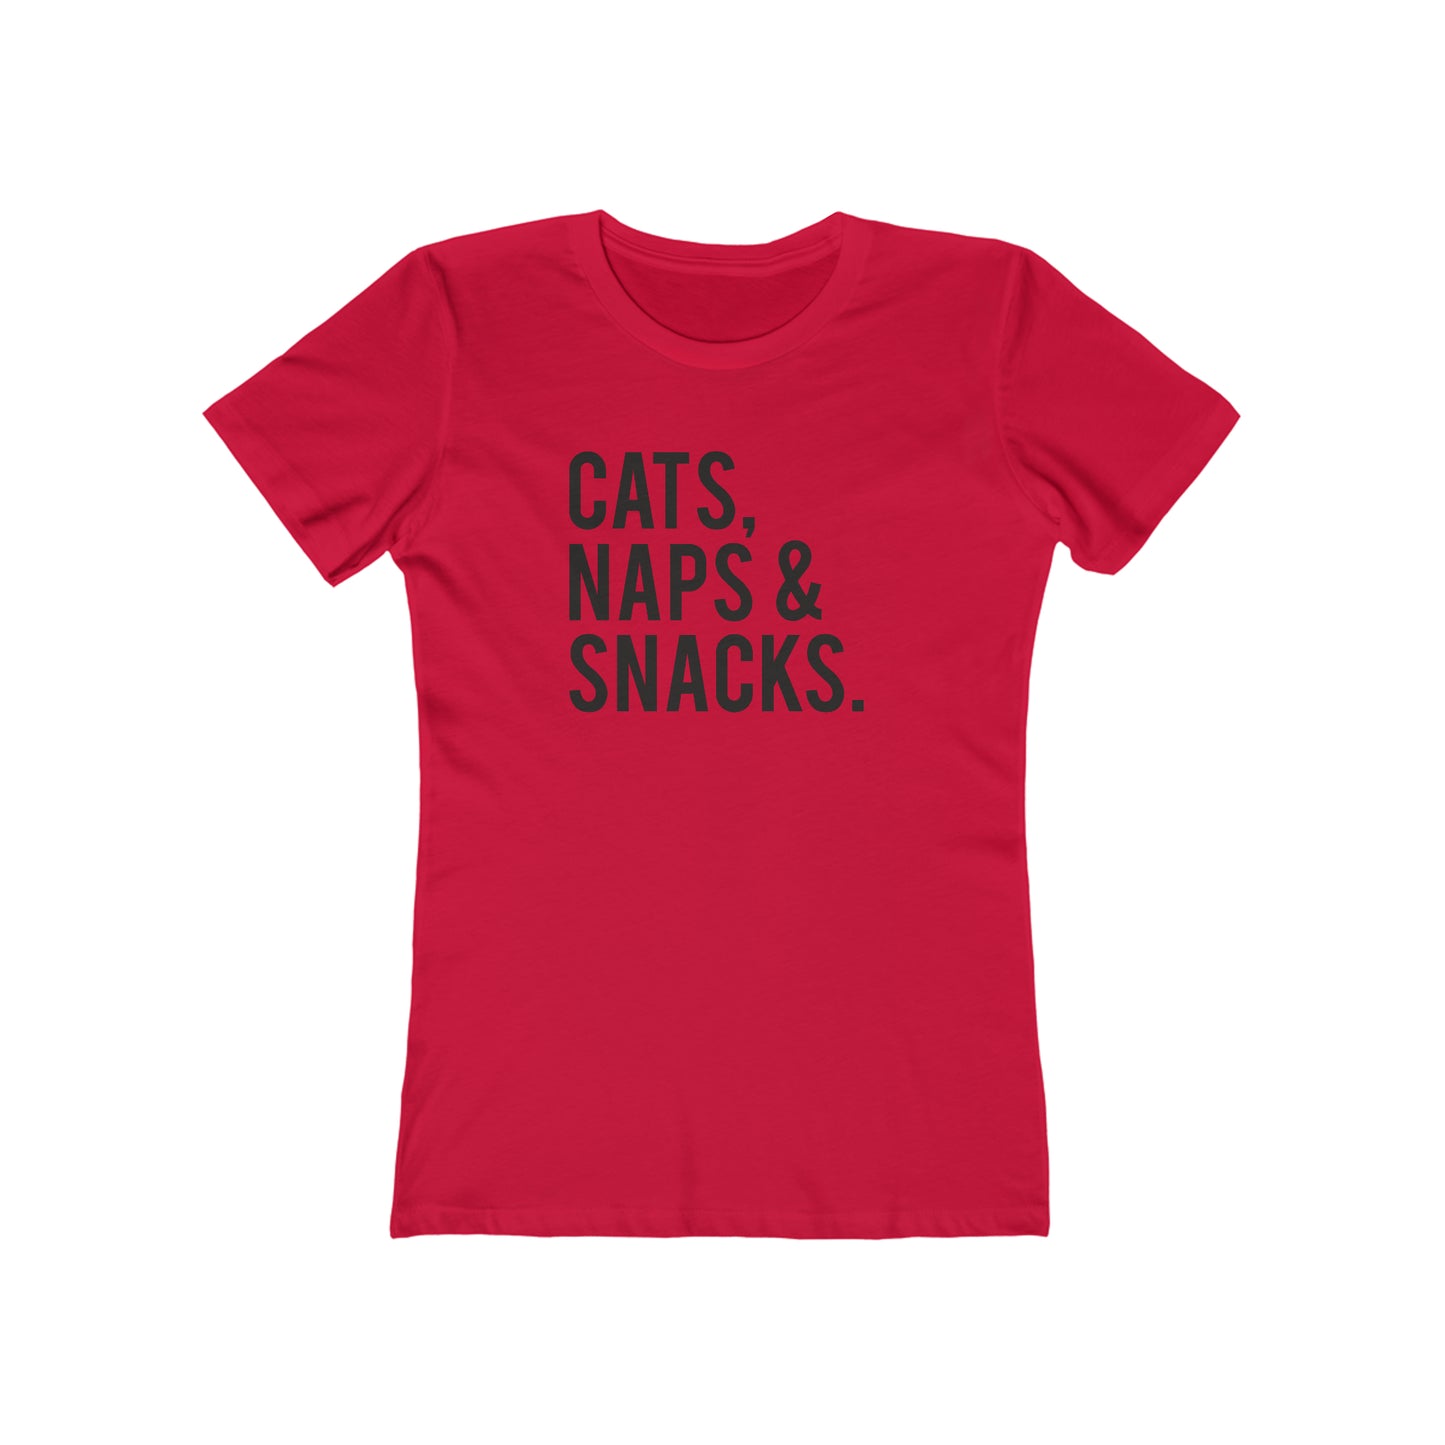 Cat, Naps & Snacks. - Women's T-shirt